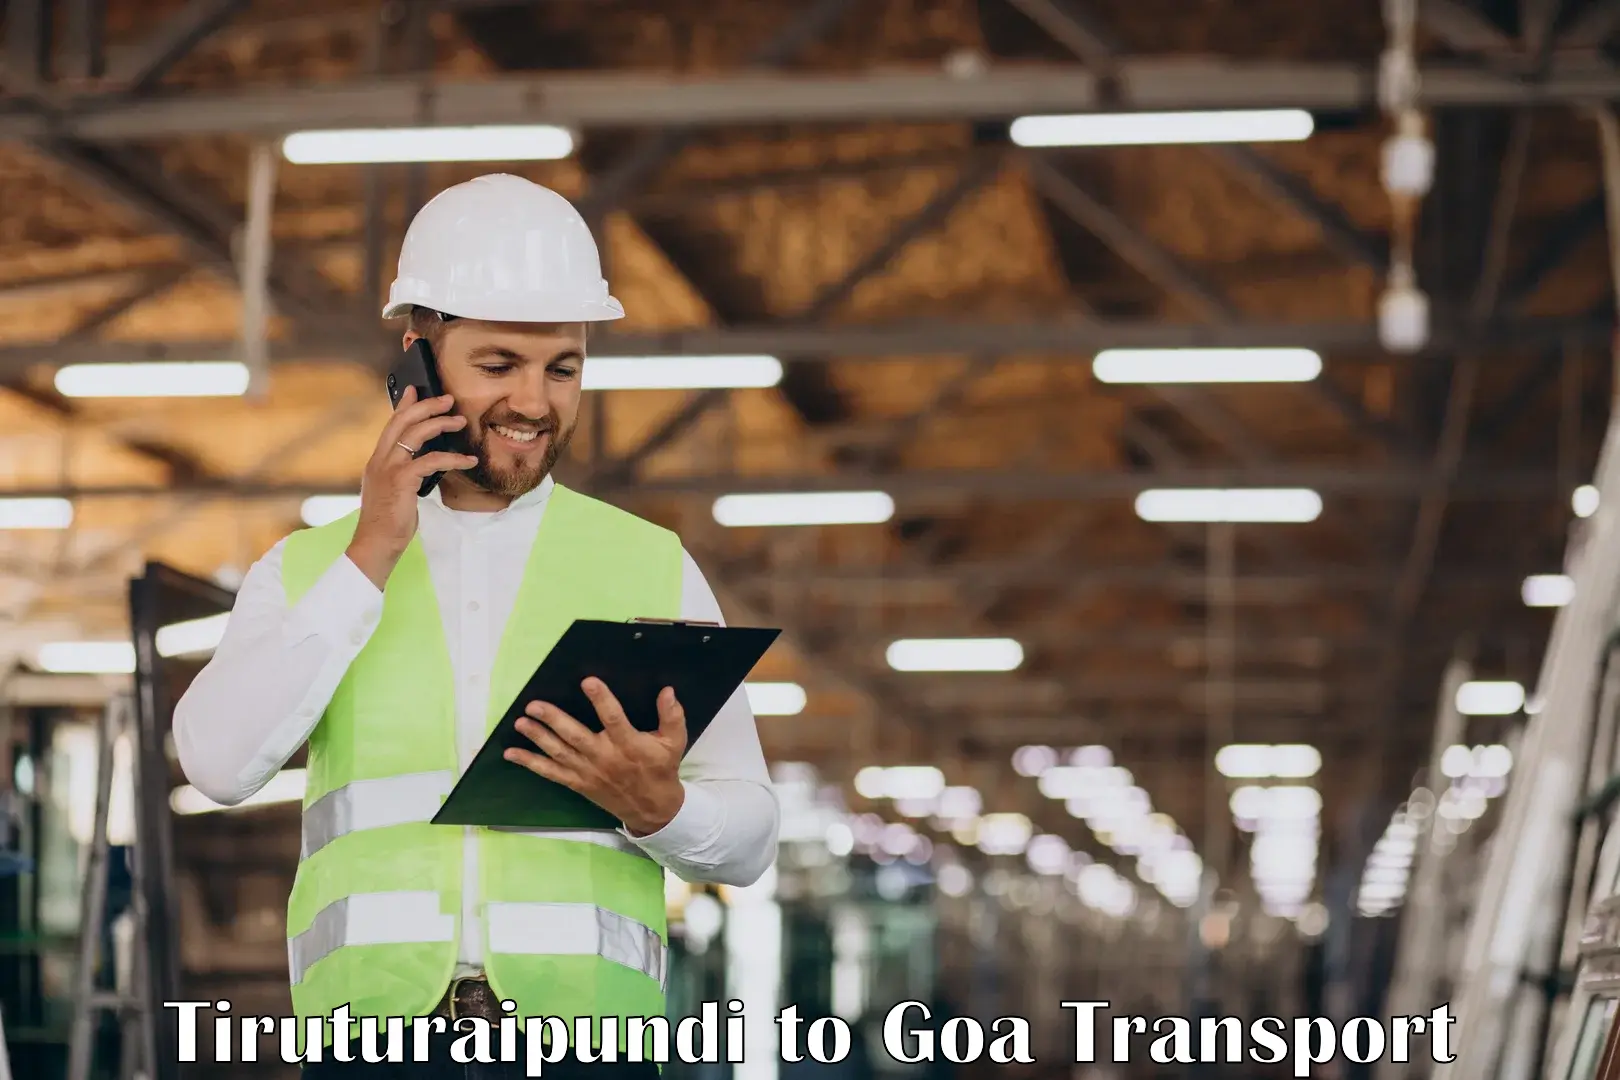 Transport shared services Tiruturaipundi to Ponda